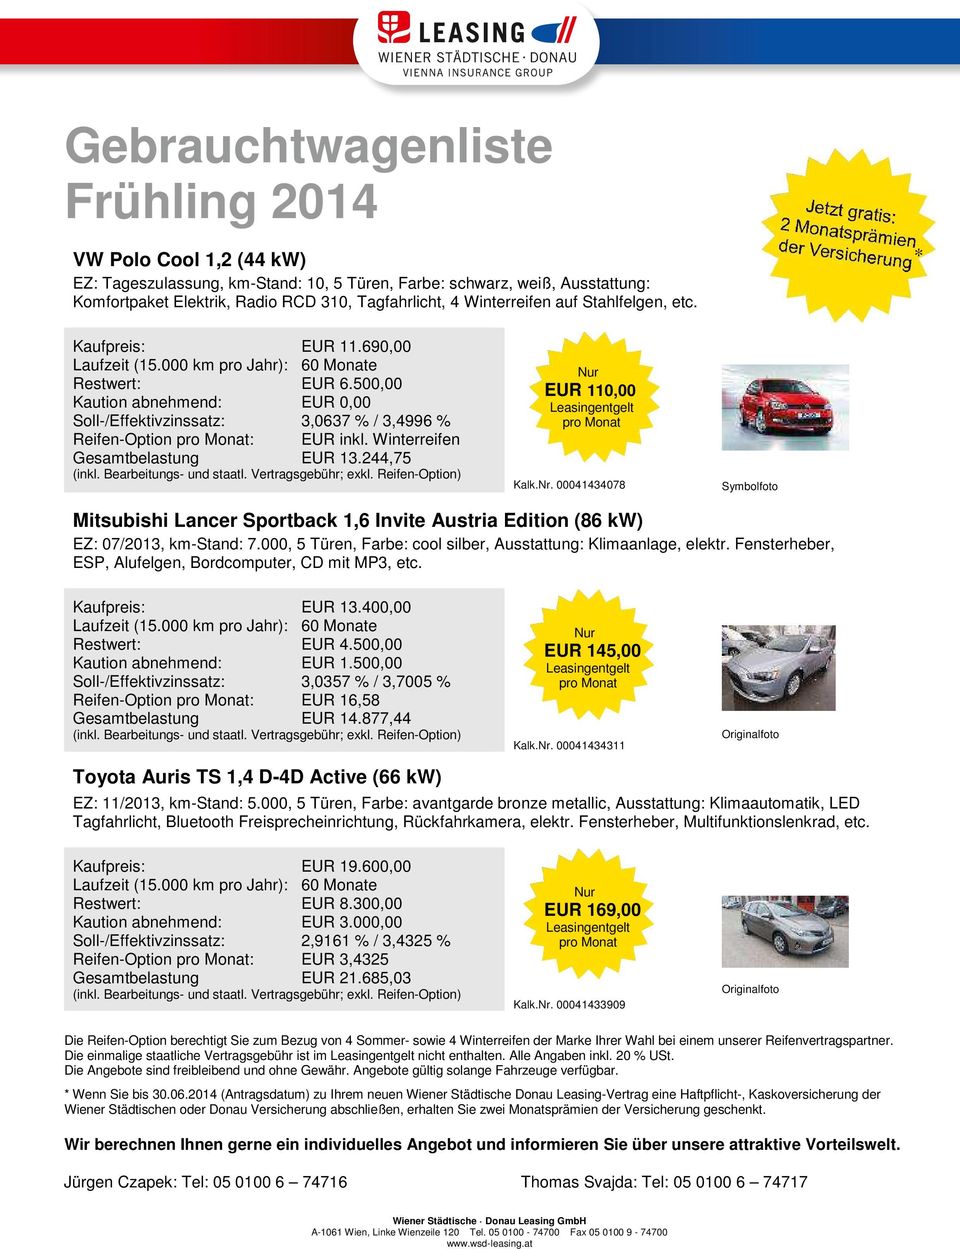 00041434078 Mitsubishi Lancer Sportback 1,6 Invite Austria Edition (86 kw) EZ: 07/2013, km-stand: 7.000, 5 Türen, Farbe: cool silber, Ausstattung: Klimaanlage, elektr.